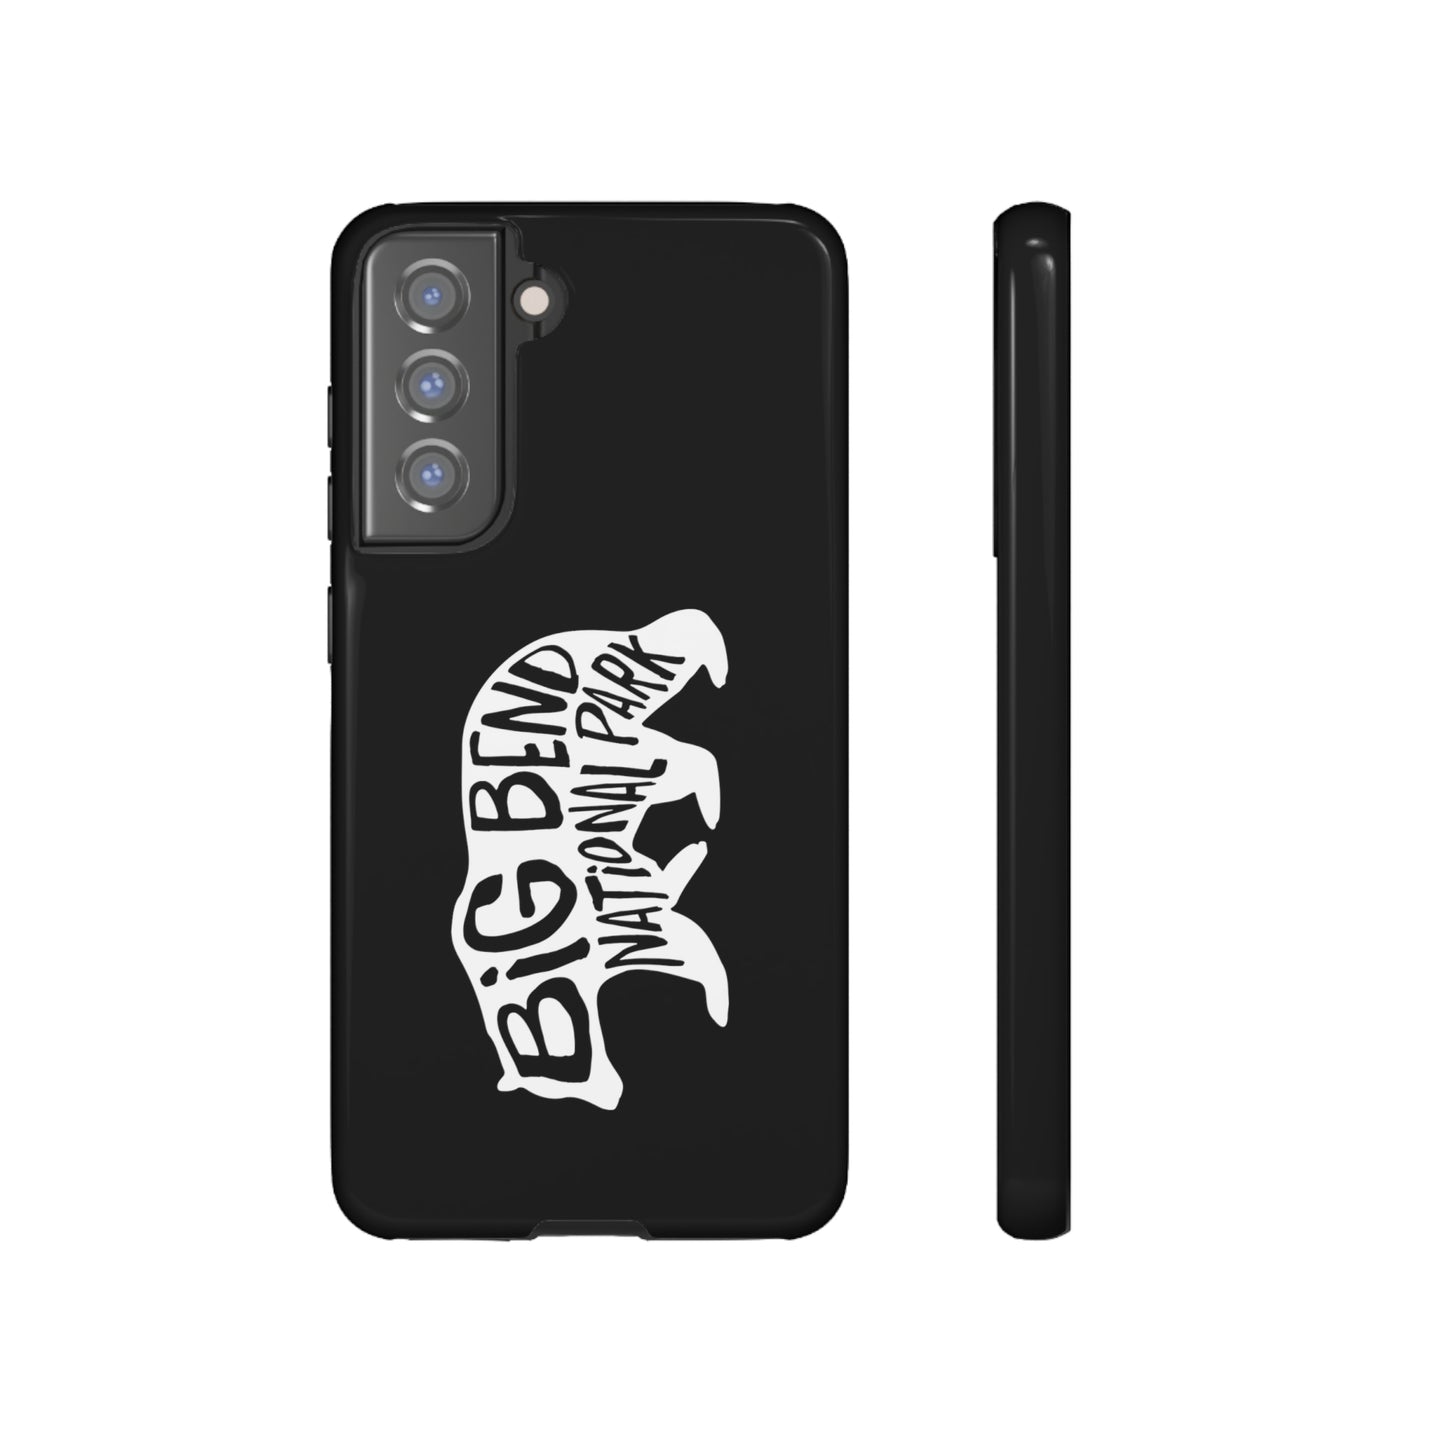 Big Bend National Park Phone Case - Black Bear Design